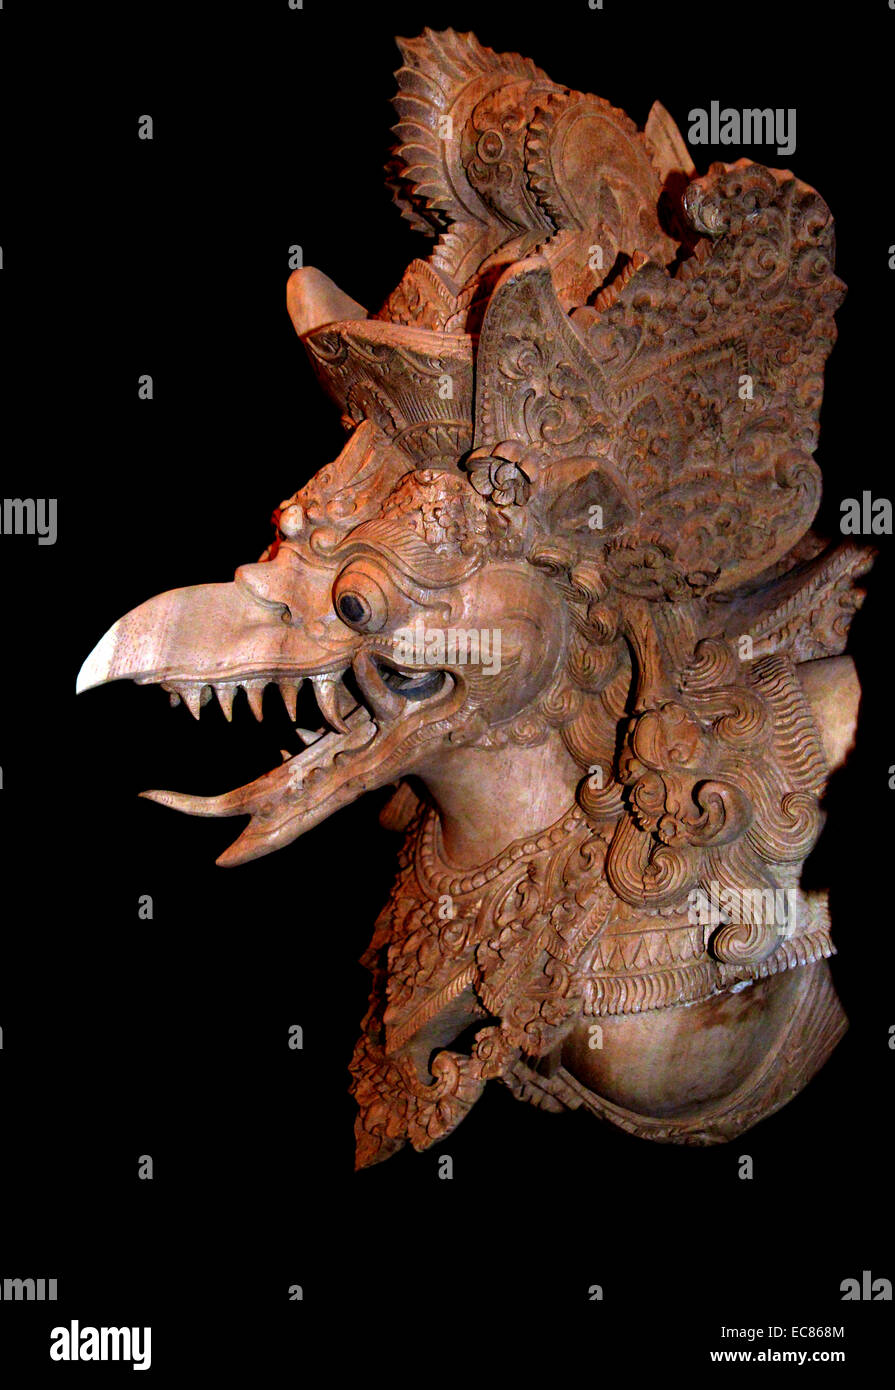 Detalle de una estatua tallada en madera de un Garuda Indonesia. El Garuda es un gran pájaro mítico; aves-como criatura; o pájaro humanoide que aparece tanto en la mitología hindú y budista. Garuda es el montaje (vahana) del Señor Vishnu. Garuda es el nombre hindú de la constelación Aquila. La Brahminy kite y Phoenix son considerados las representaciones contemporáneas de Garuda Foto de stock